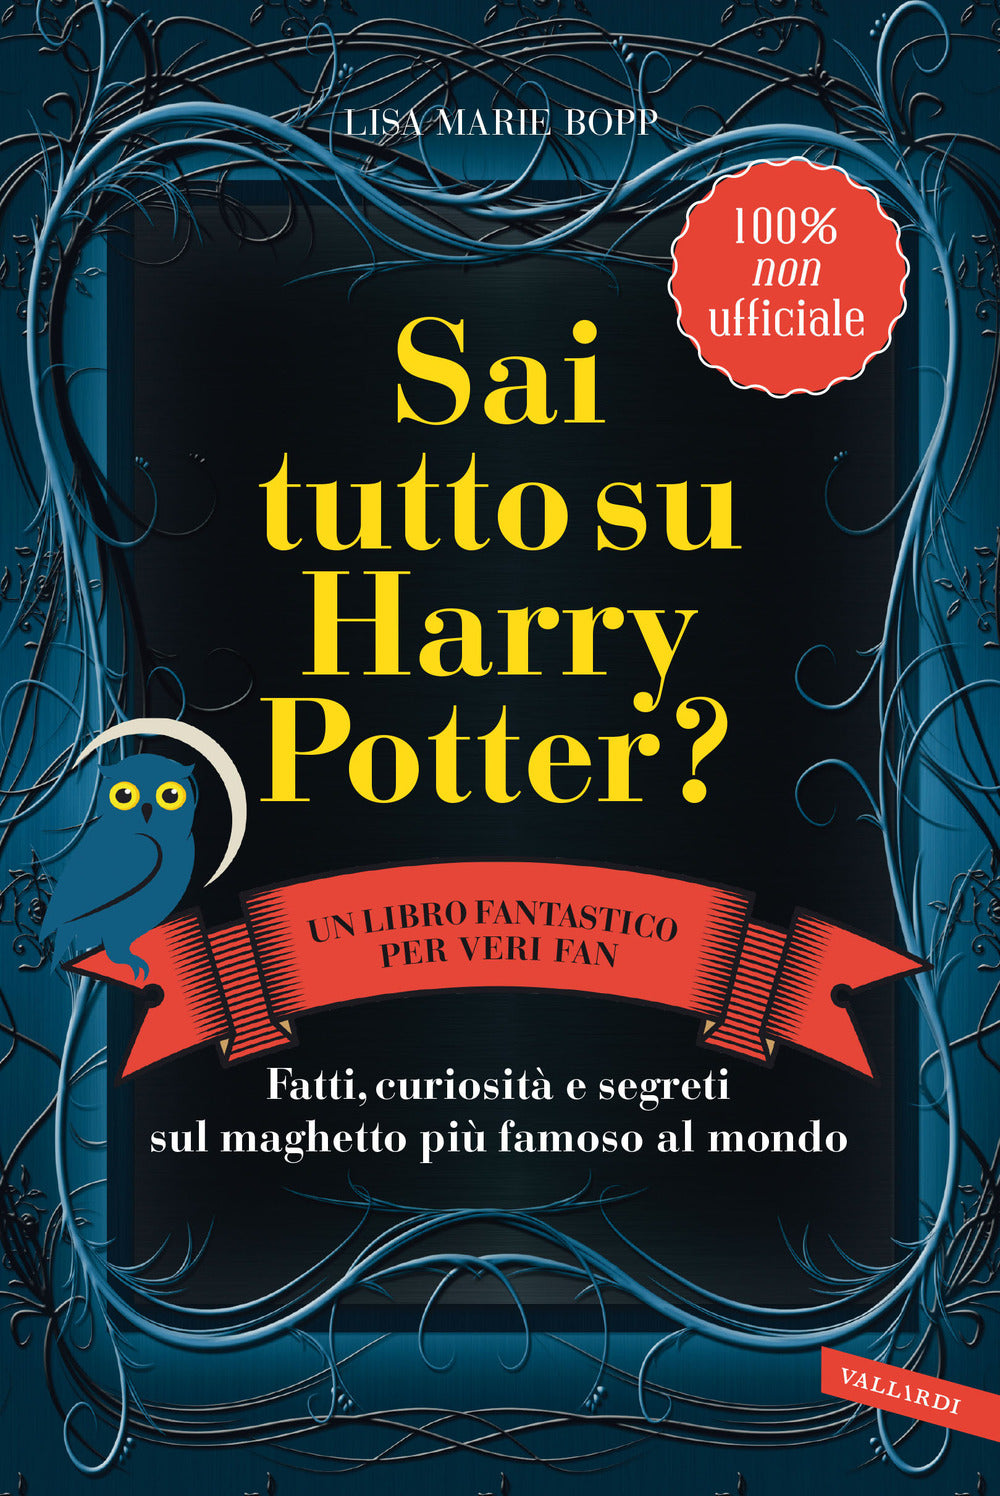 Sai tutto su Harry Potter? Fatti, curiosità e segreti sul maghetto più famoso al mondo.